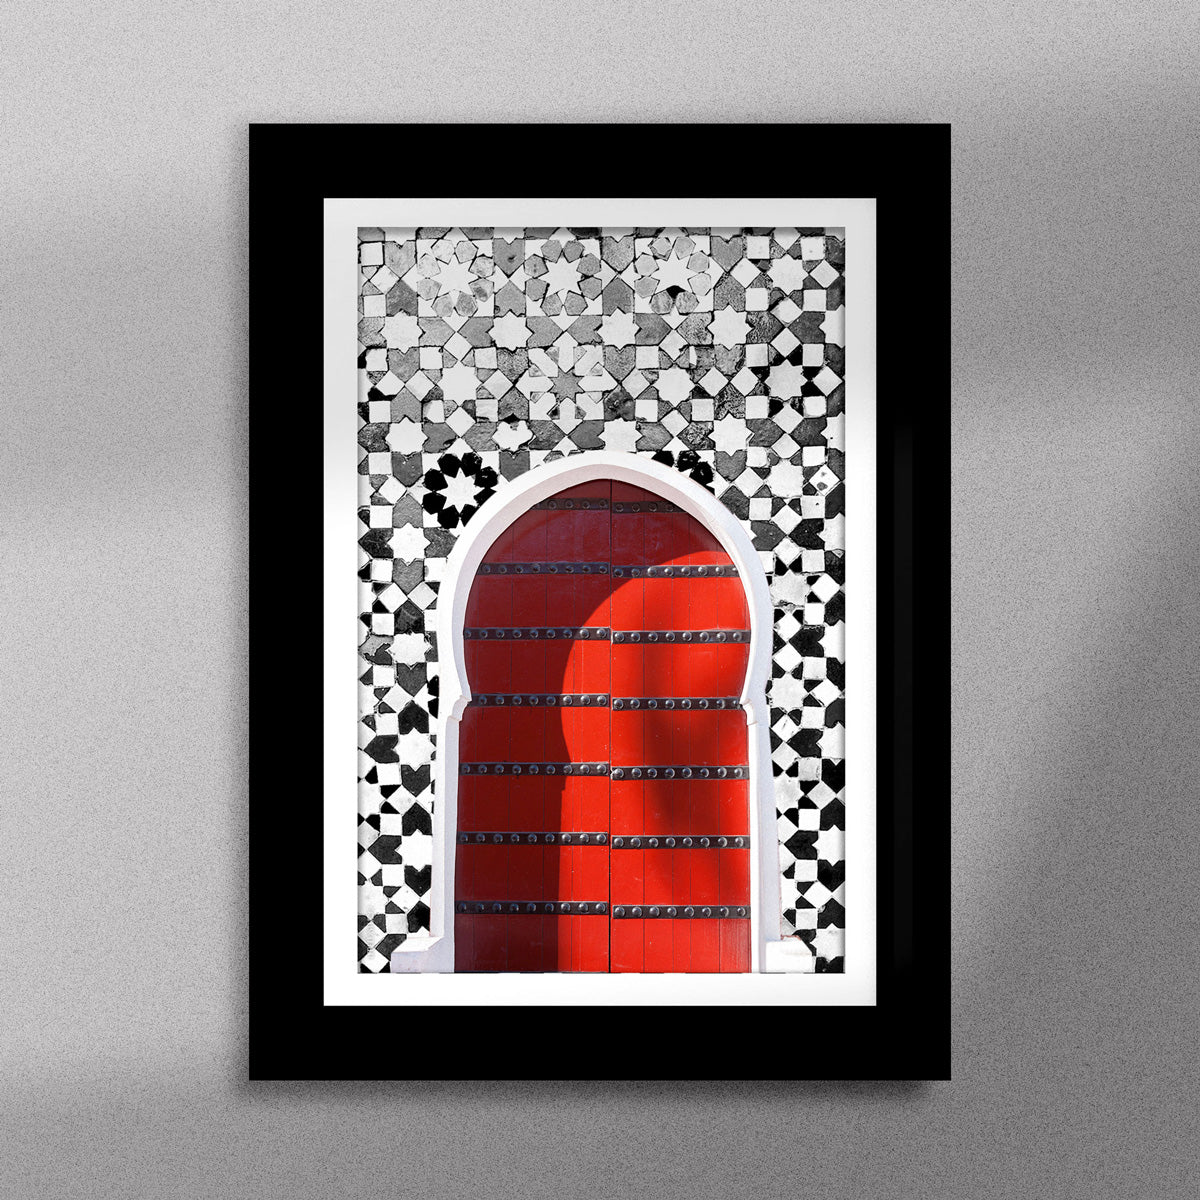 Tableau décoratif d'une porte marocaine en rouge, sur un fond de zellige marocain en noir et blanc, encadré dans un cadre en noir - Format A5